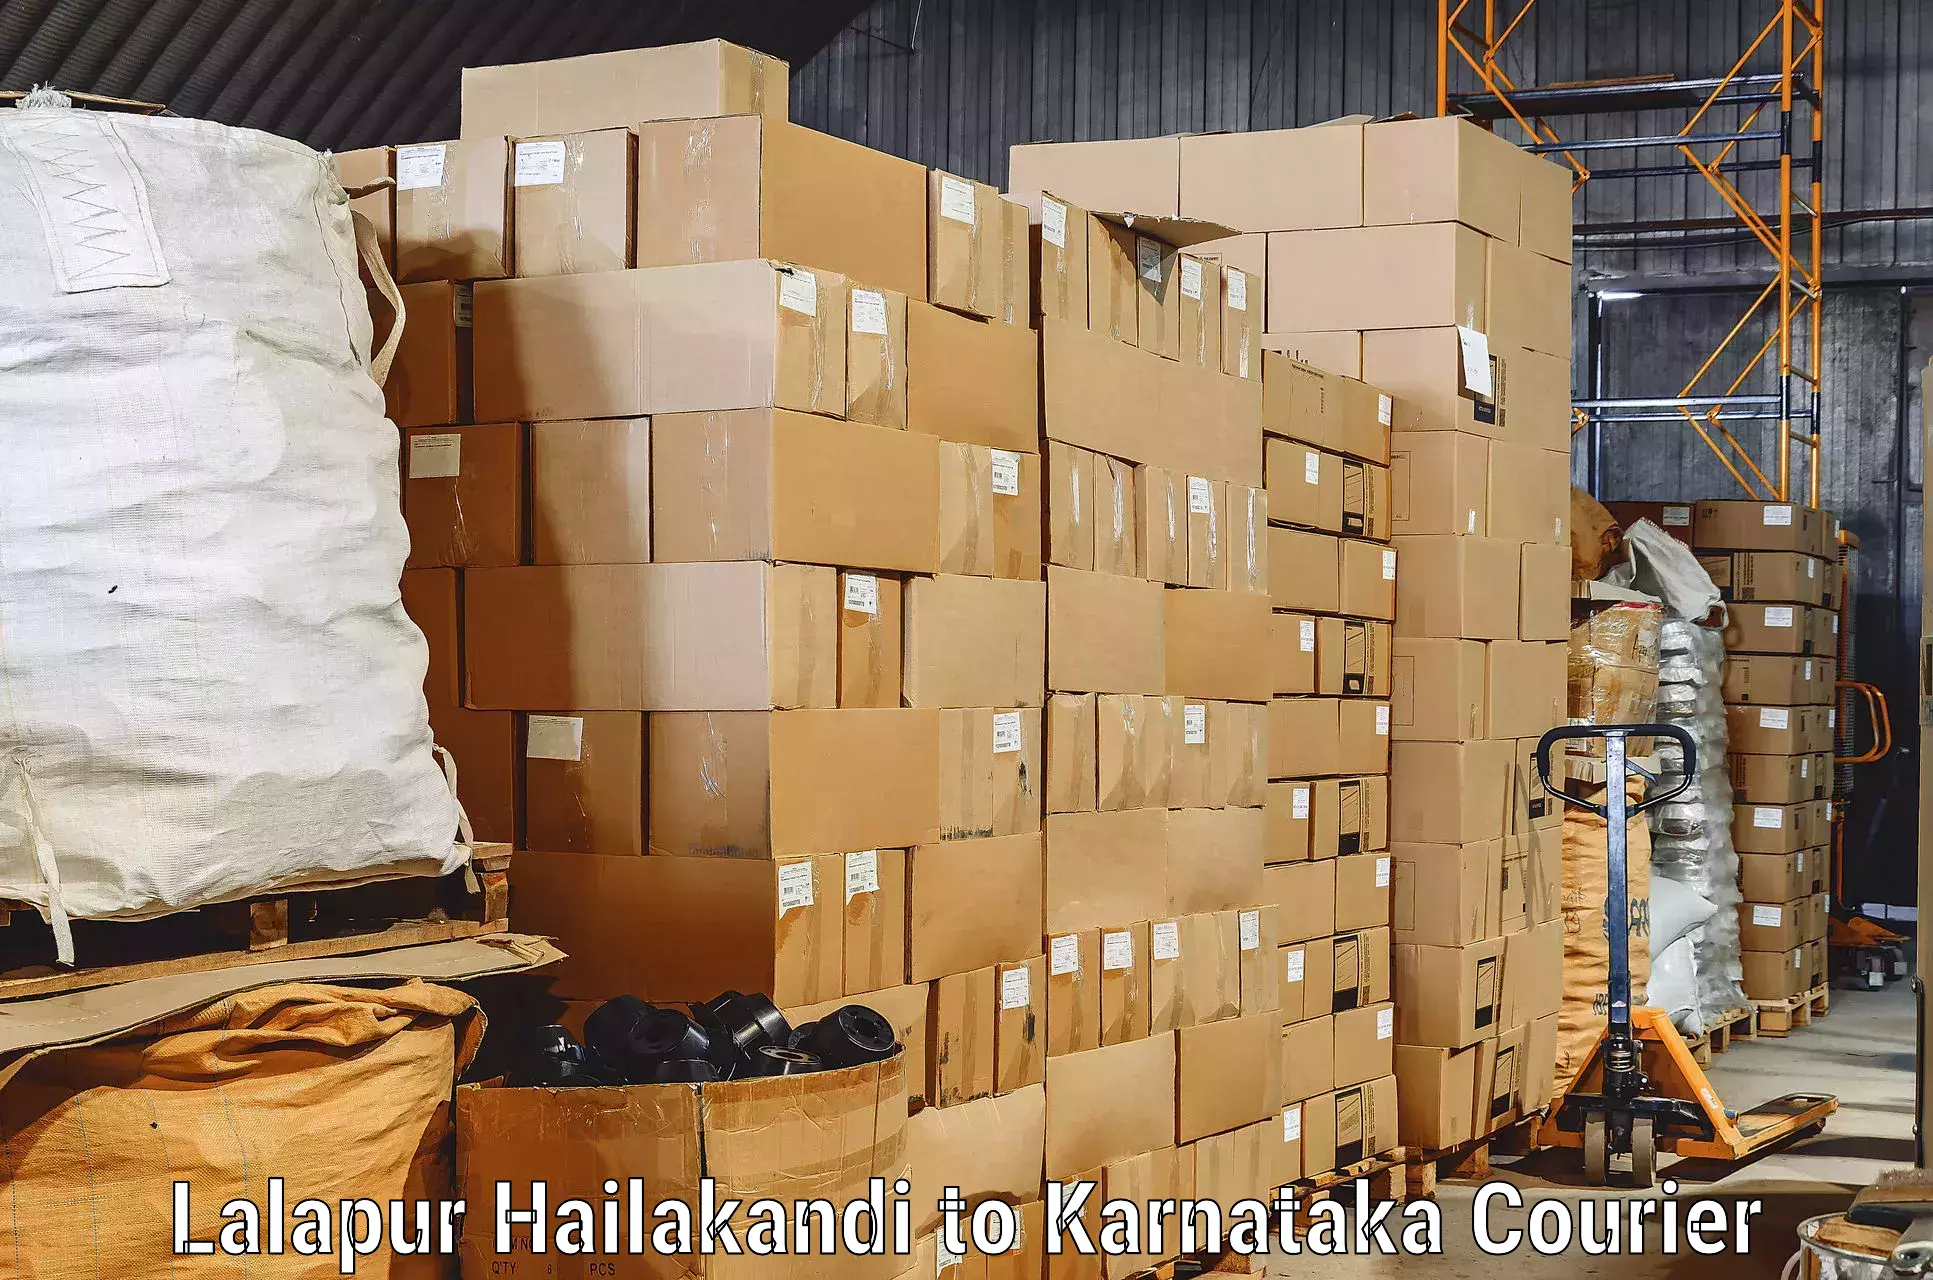 Moving and storage services Lalapur Hailakandi to Kulshekar